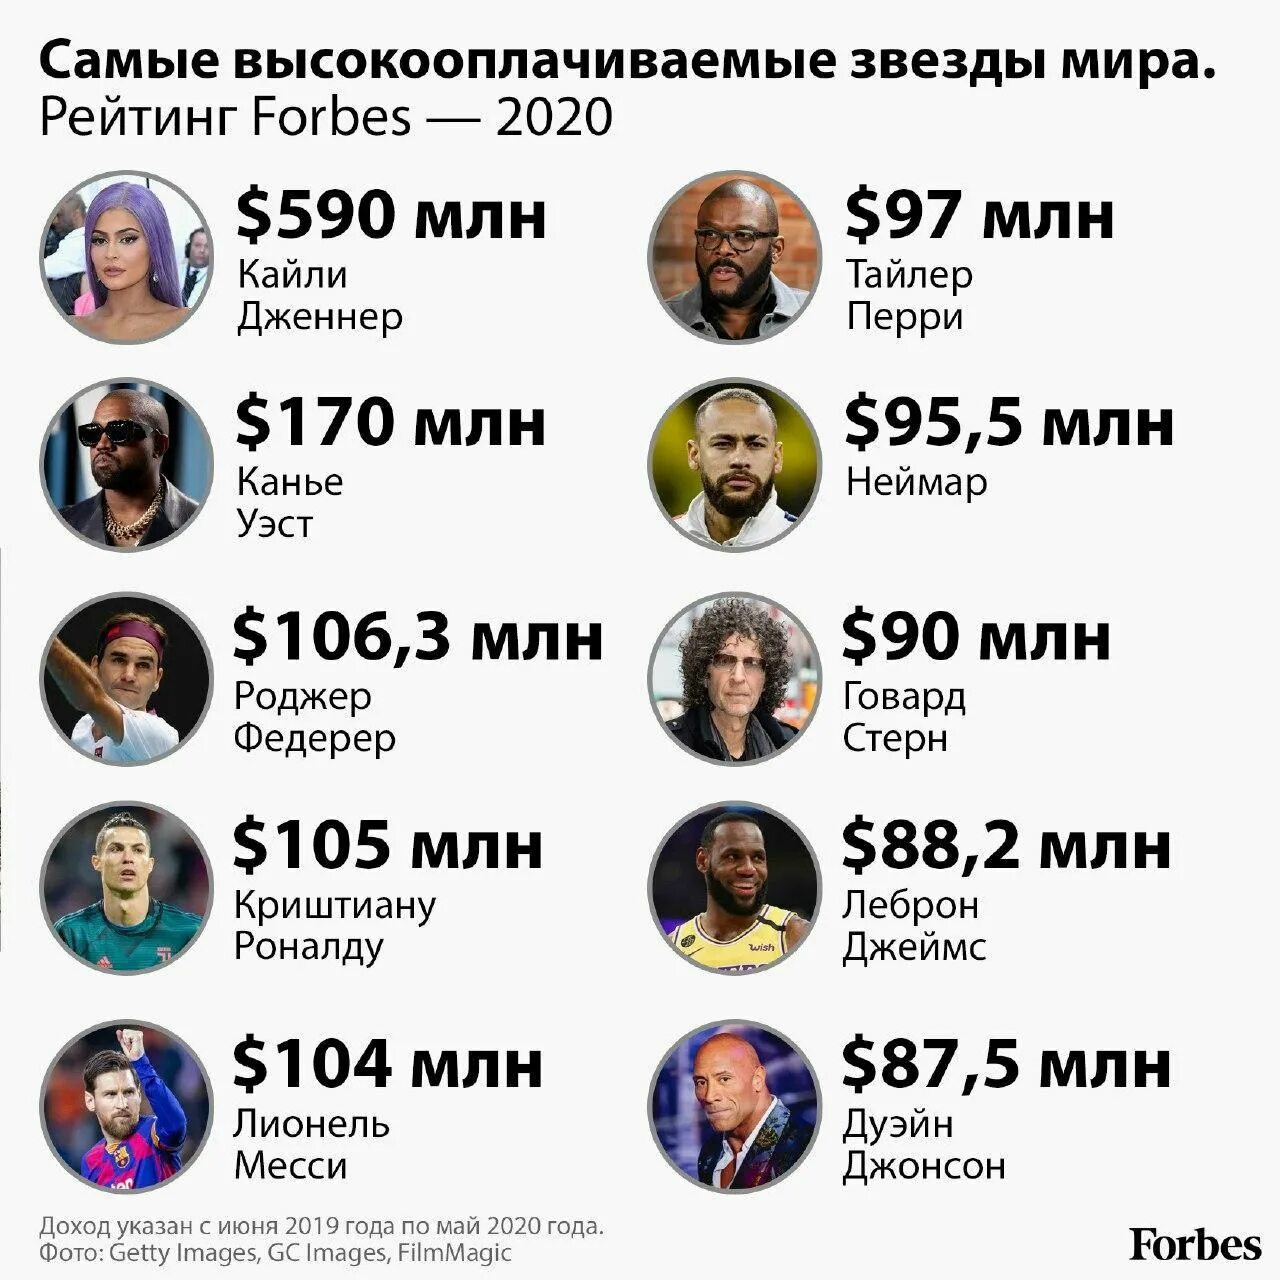 Список самых знаменитых богатых людей. Список богатых людей. Список самых богатых людей. Список форбс. Самые богатые люди форбс.